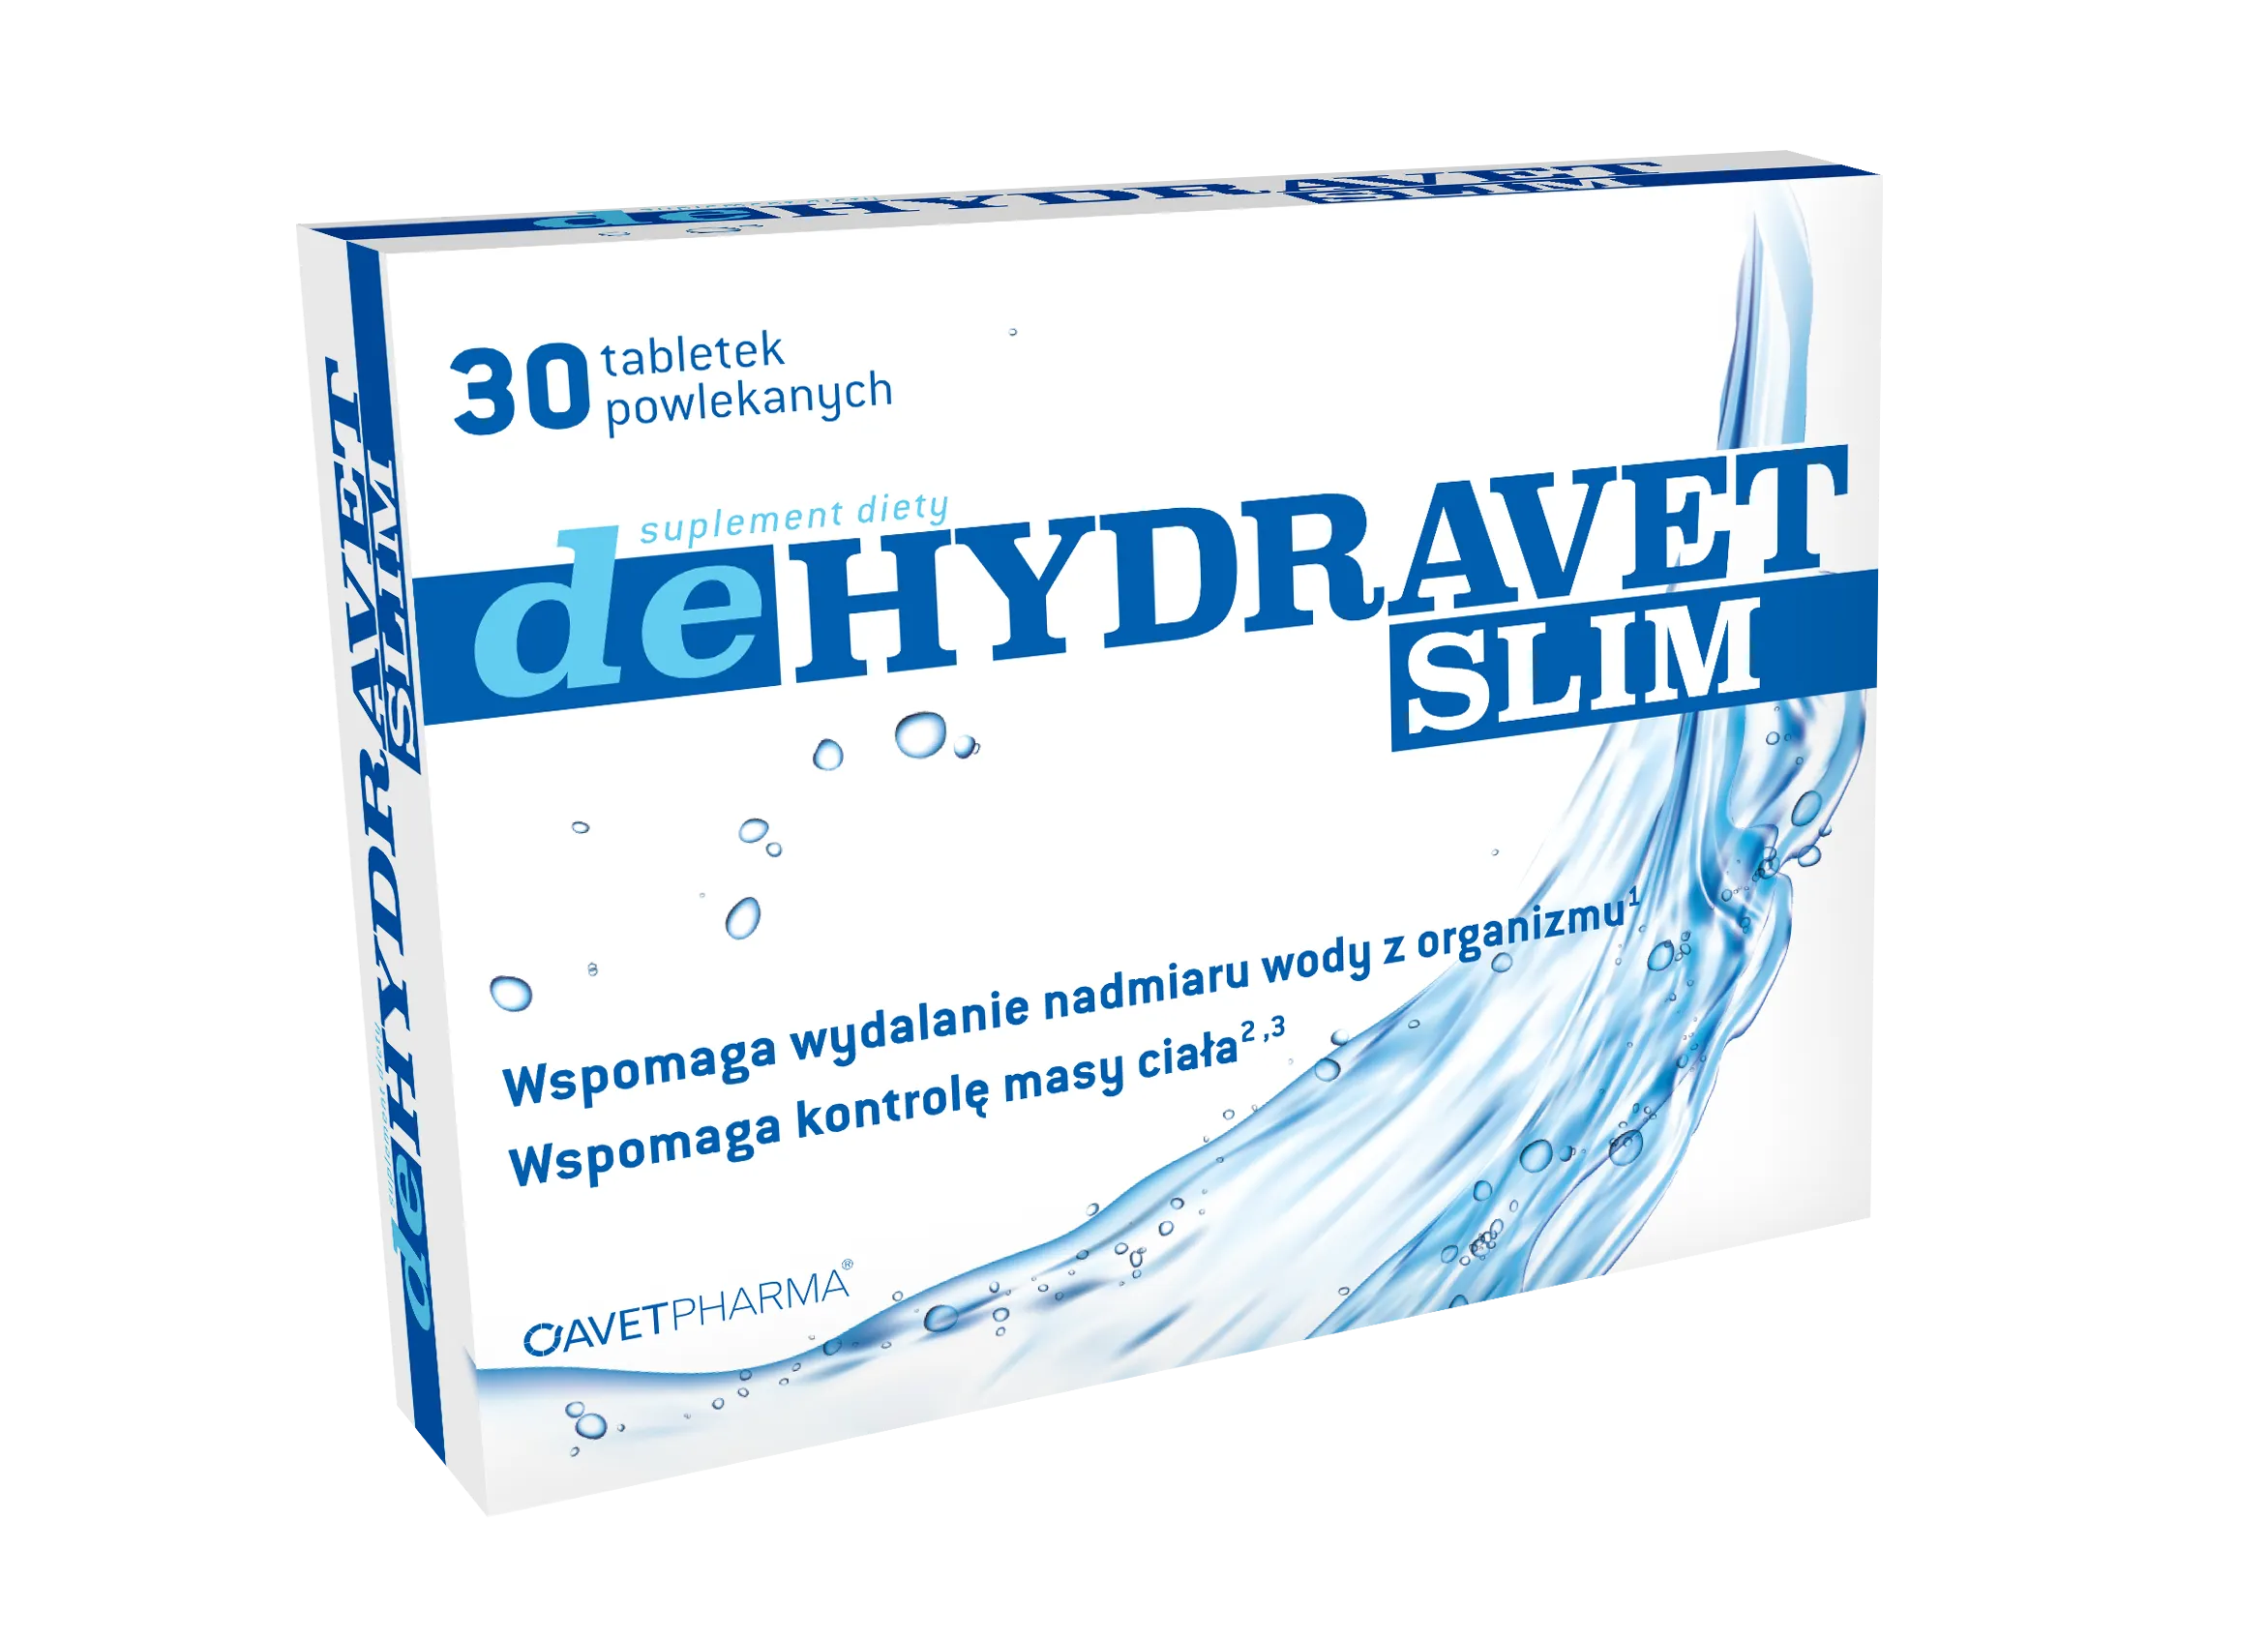 Dehydravet Slim, suplement diety, 30 tabletek